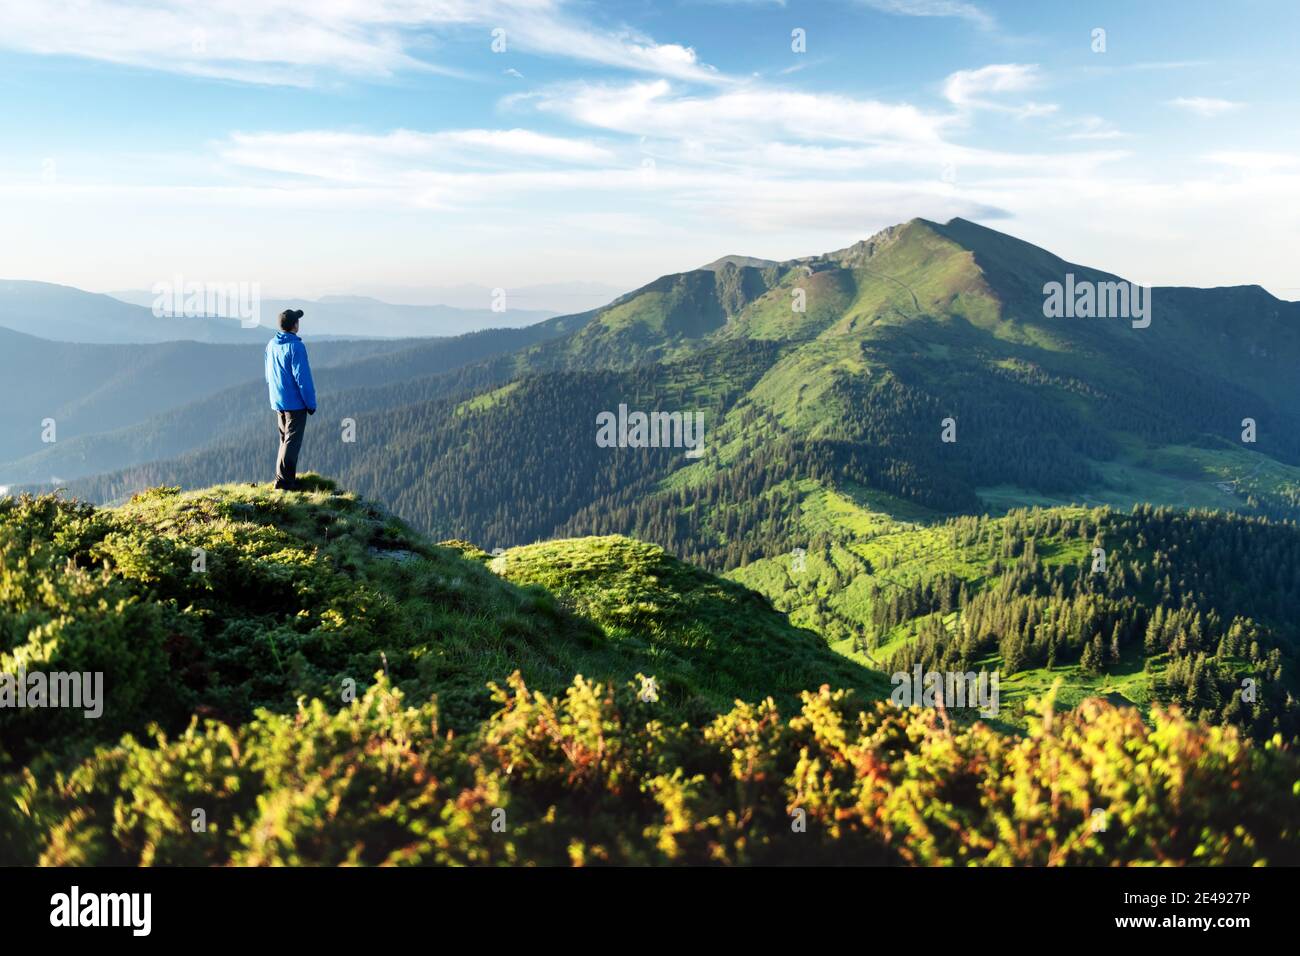 Un turista sul bordo di una montagna coperta da un'erba lussureggiante. Cielo blu nuvoloso e altissime montagne sullo sfondo. Fotografia di paesaggio Foto Stock